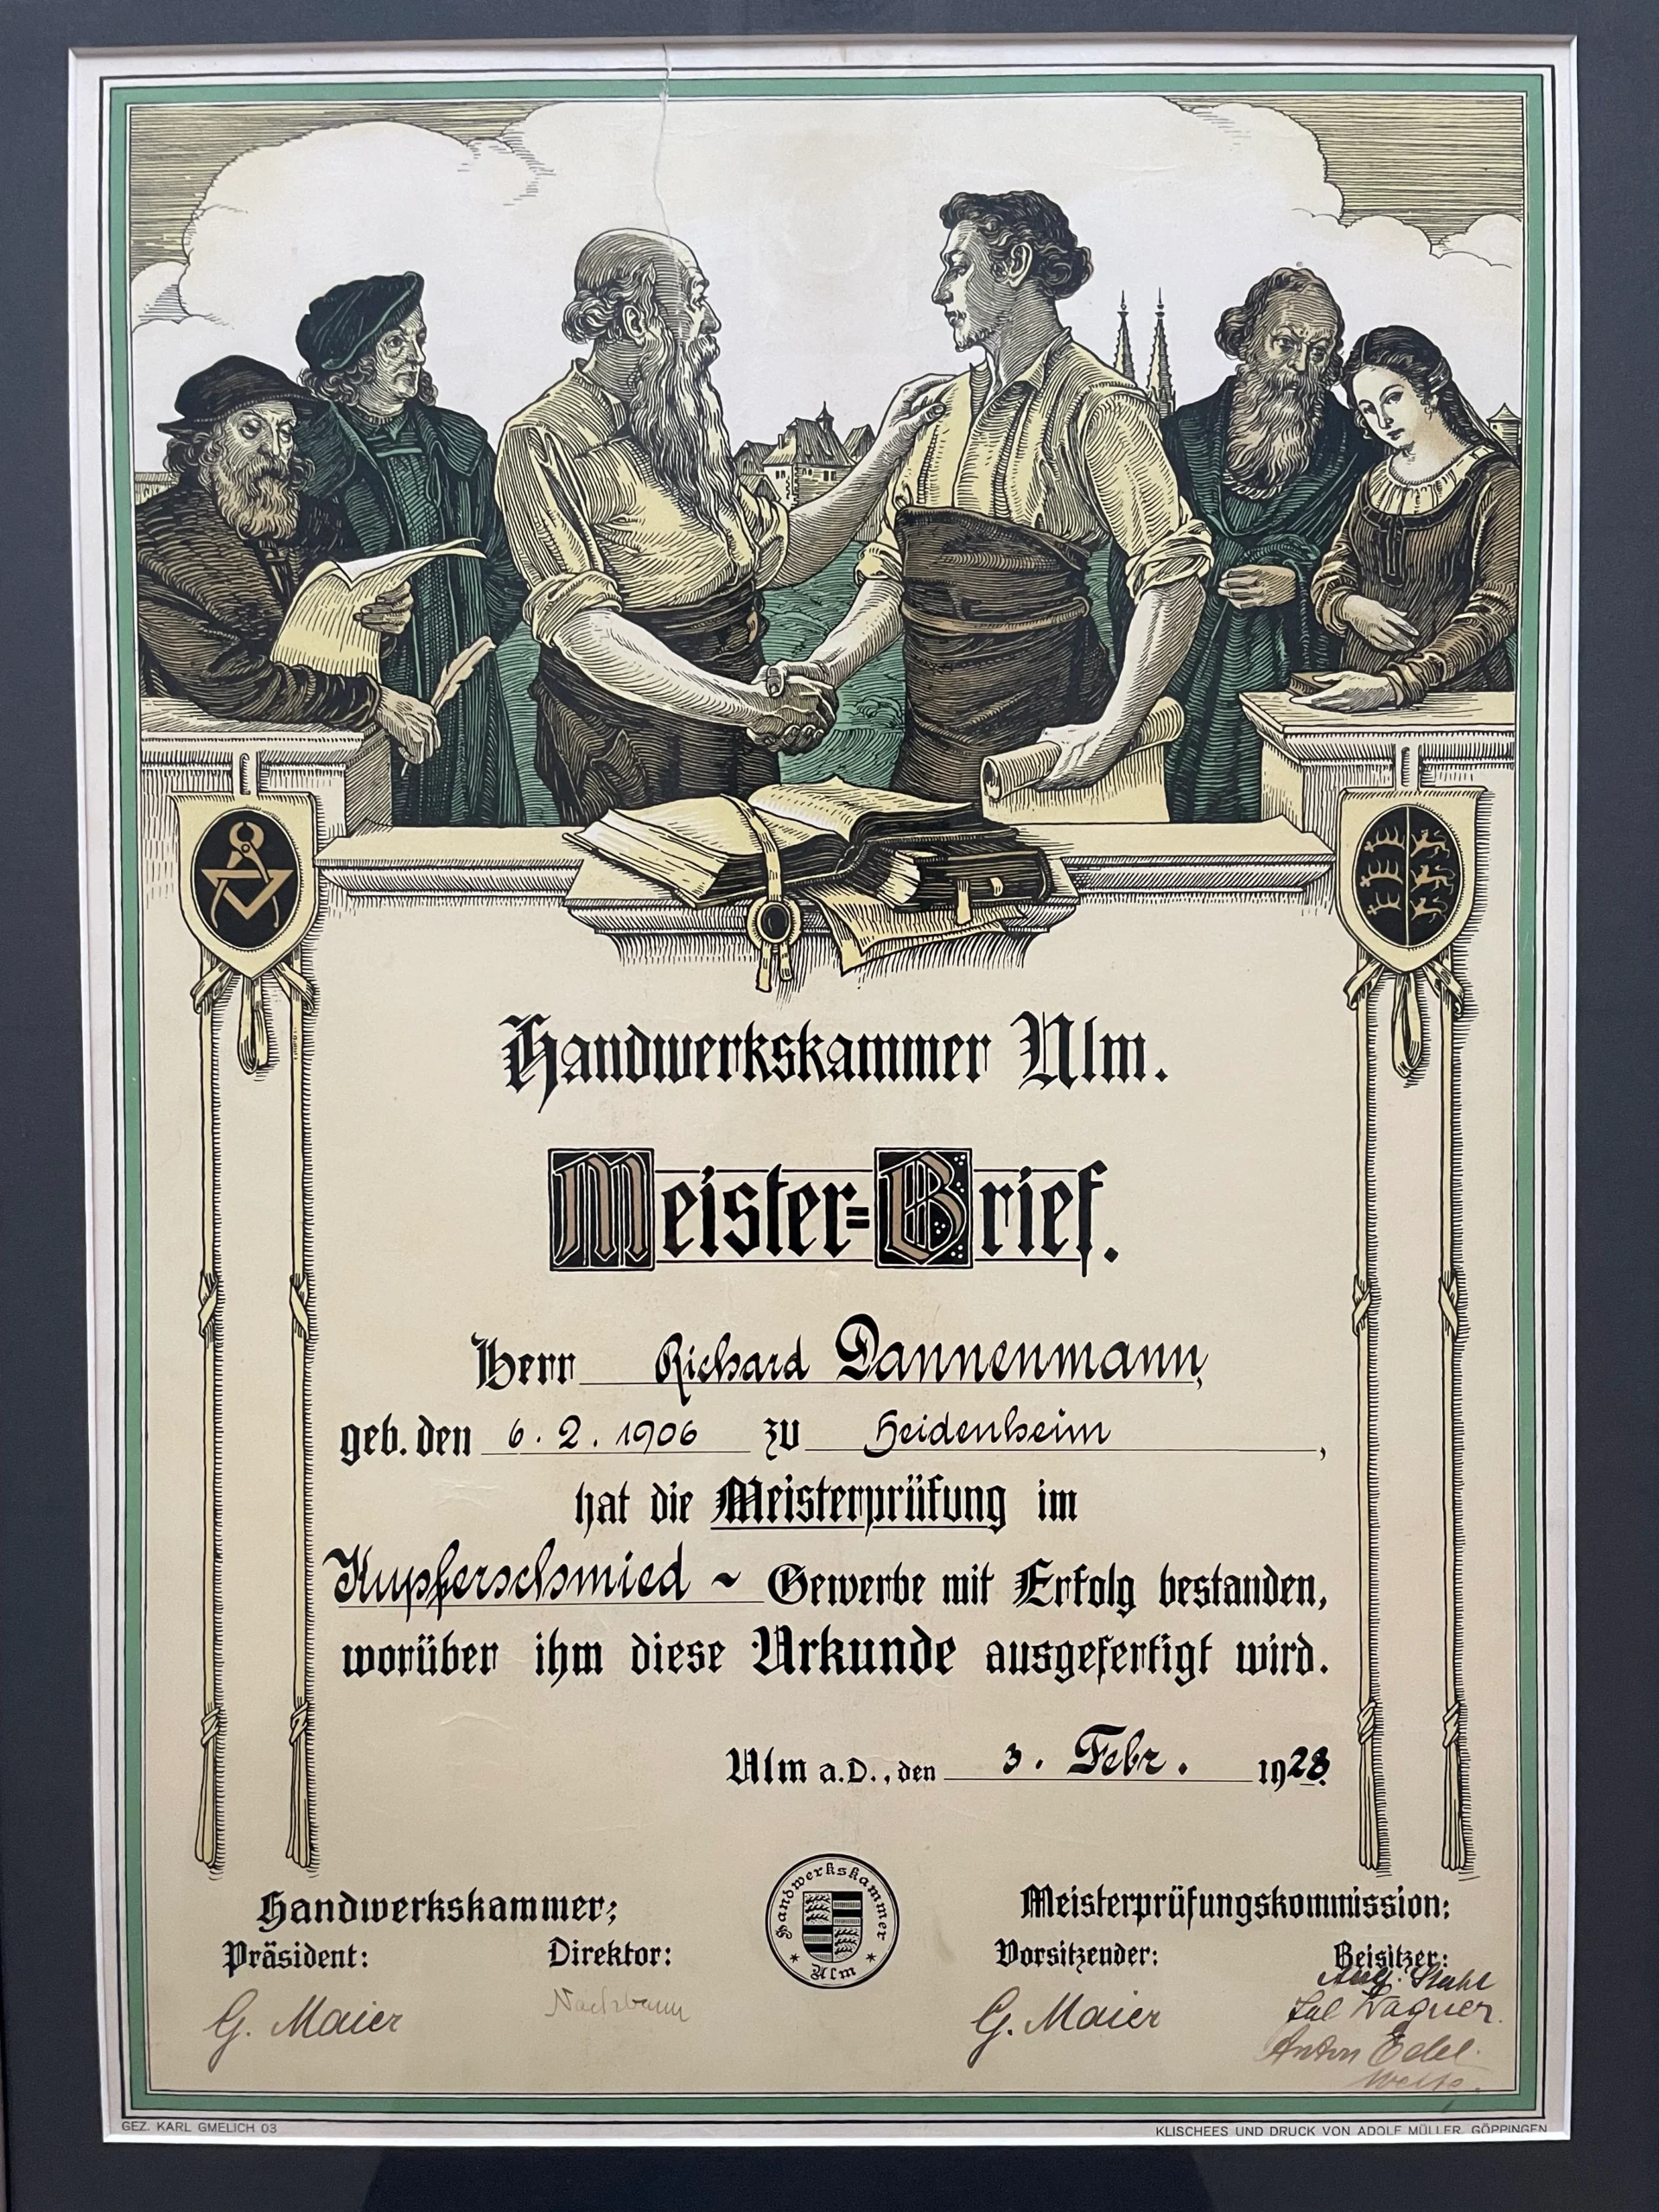 Master craftsman's certificate Richard Dannenmann